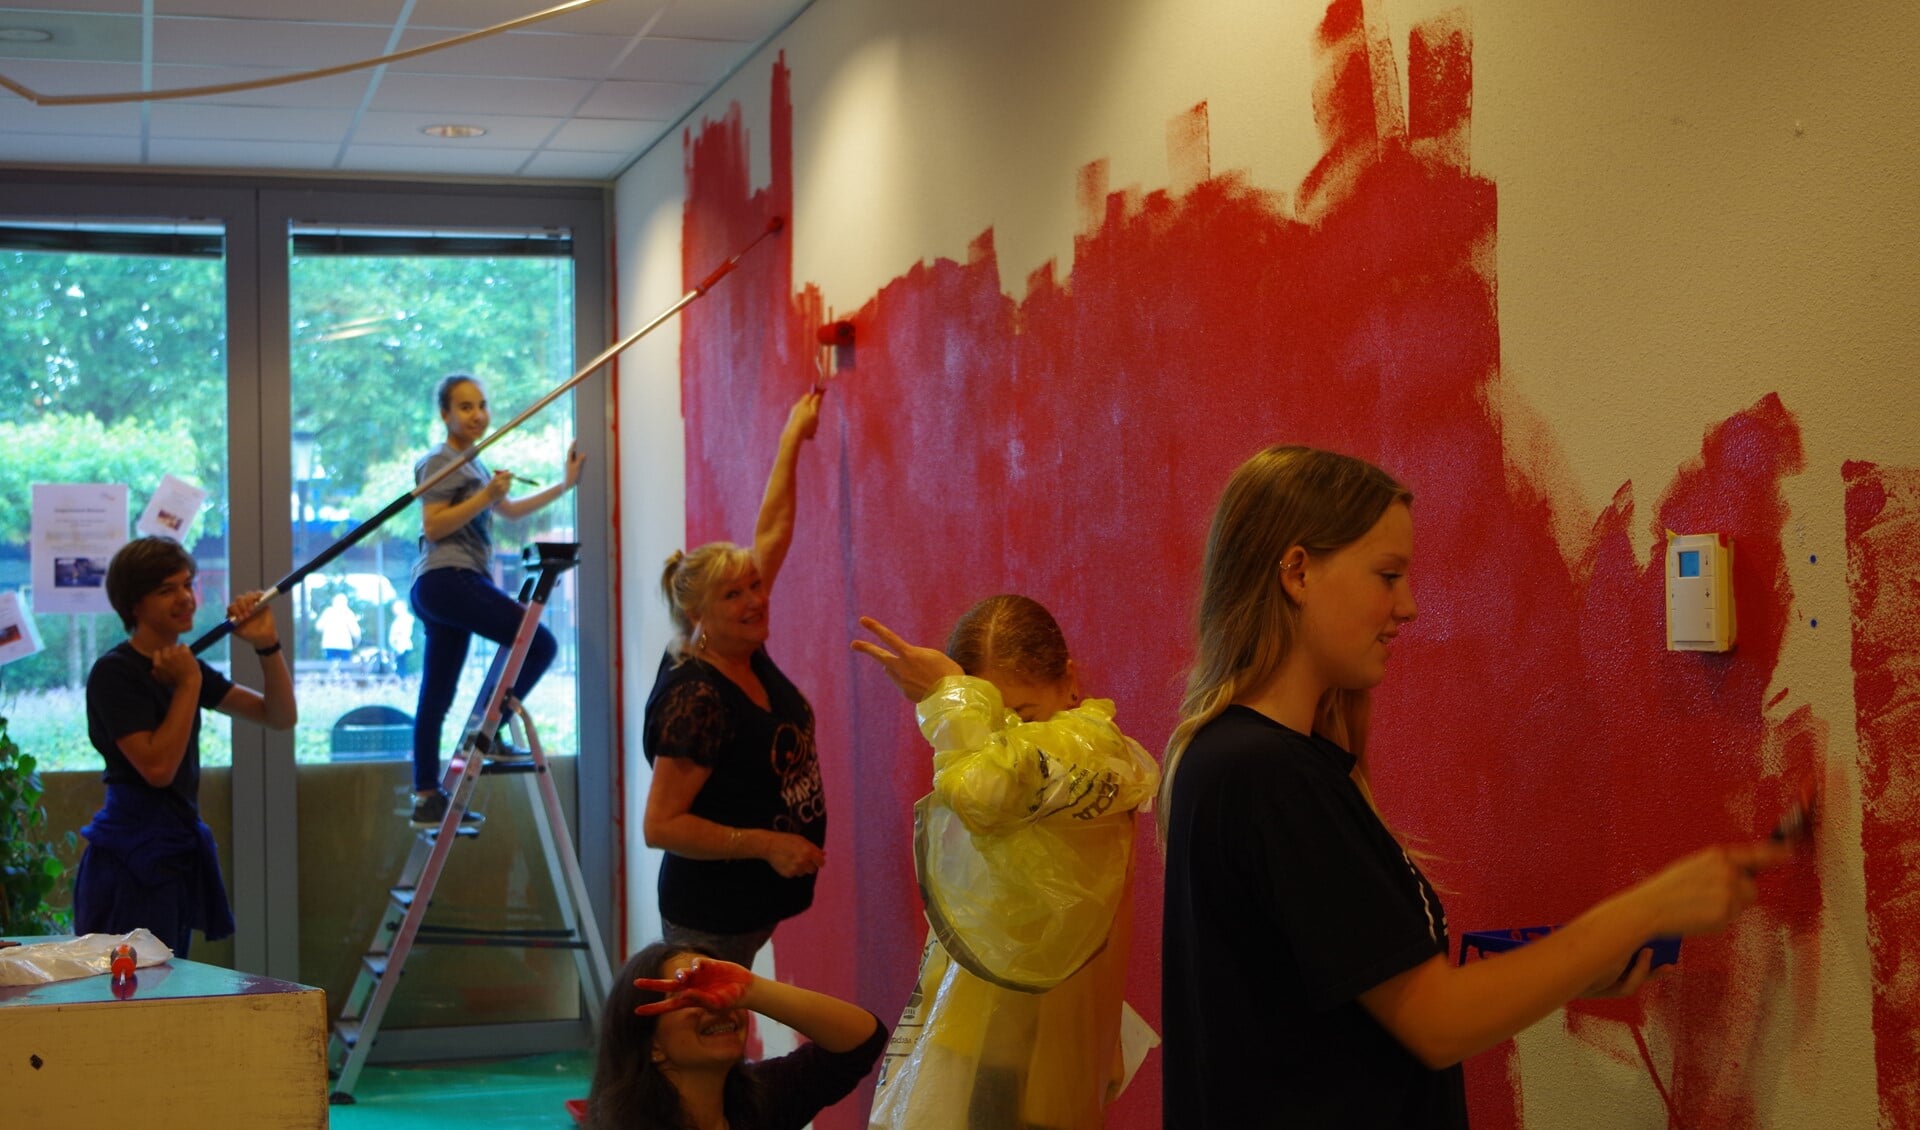 De jongeren schilderen een van de muren rood, een kleur die in het hele wijkcentrum terugkomt.